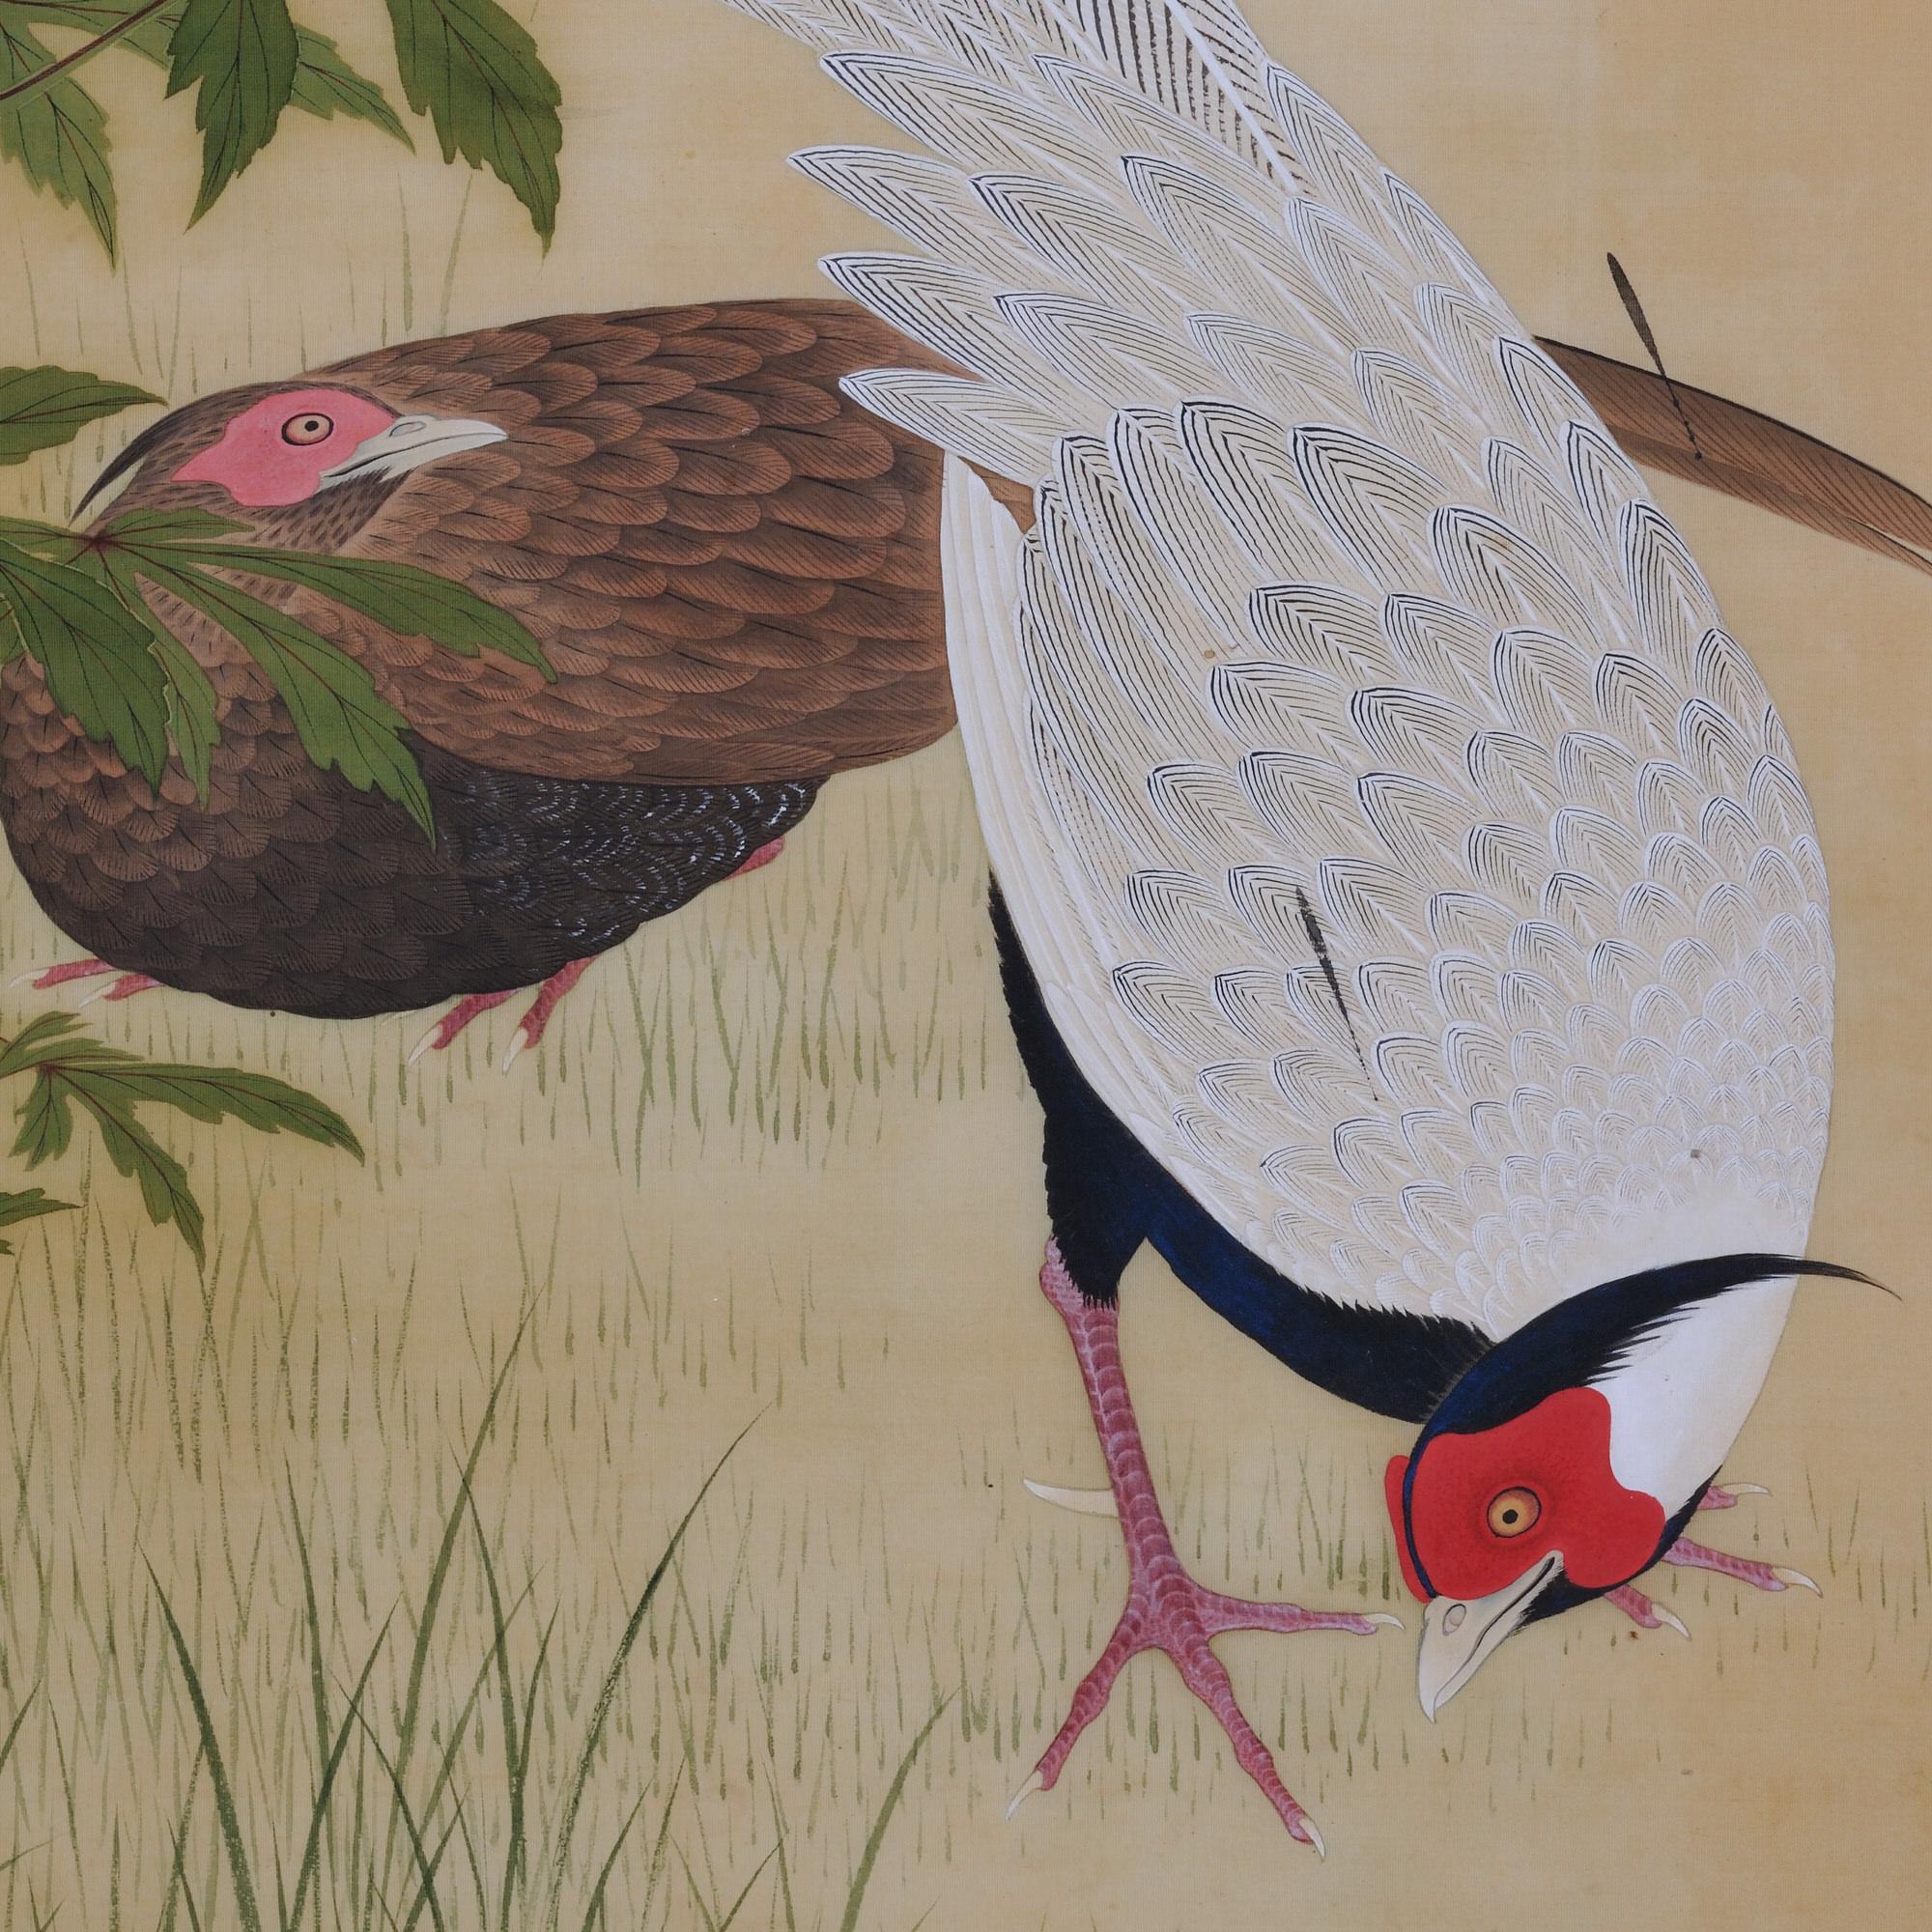 Edo Japanese Painting, 19th Century, Silver Pheasants and Hibiscus by Takakura Zaiko